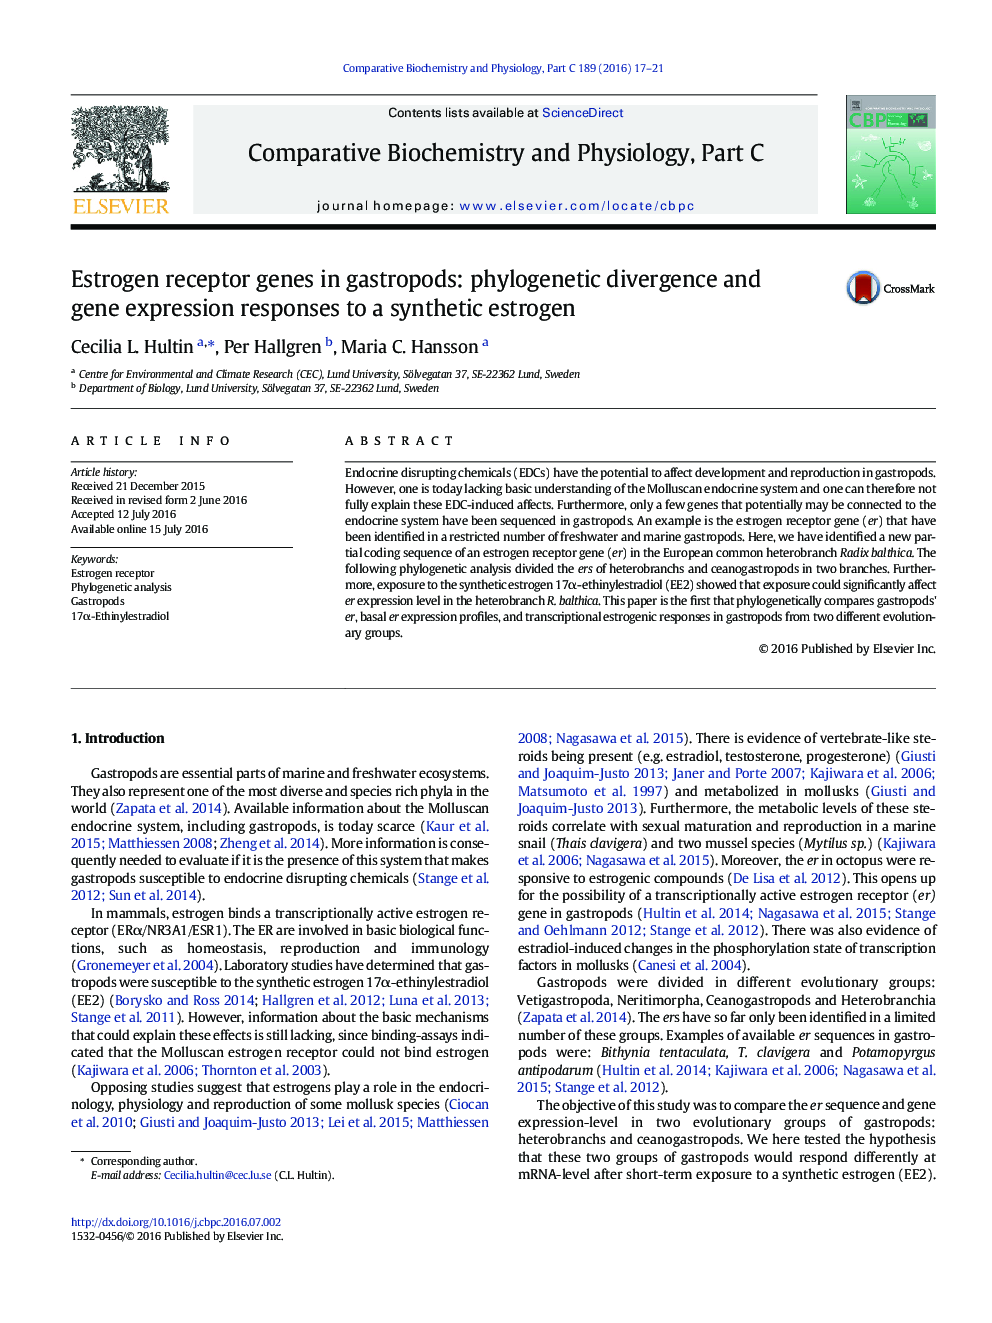 ژن های گیرنده استروژن در گاستروپودها: واکنش های بیان ژن و واگرایی فیلوژنتیک به یک استروژن مصنوعی